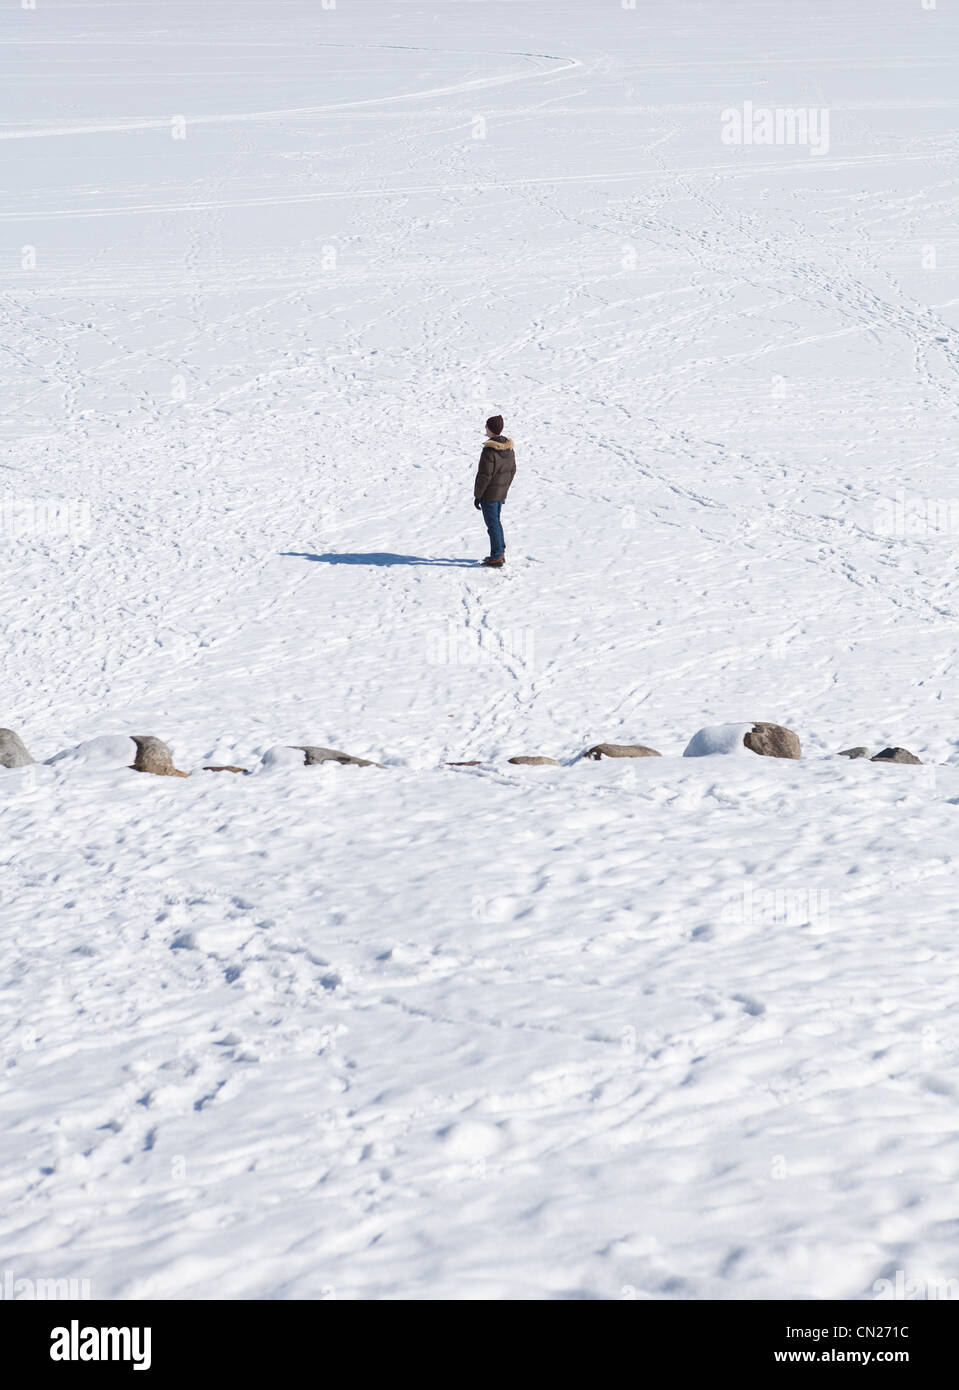 Hombre En Ropa De Invierno Caminar En La Nieve Y El Transporte De Esquí En  El Hombro. Fotos, retratos, imágenes y fotografía de archivo libres de  derecho. Image 83992223